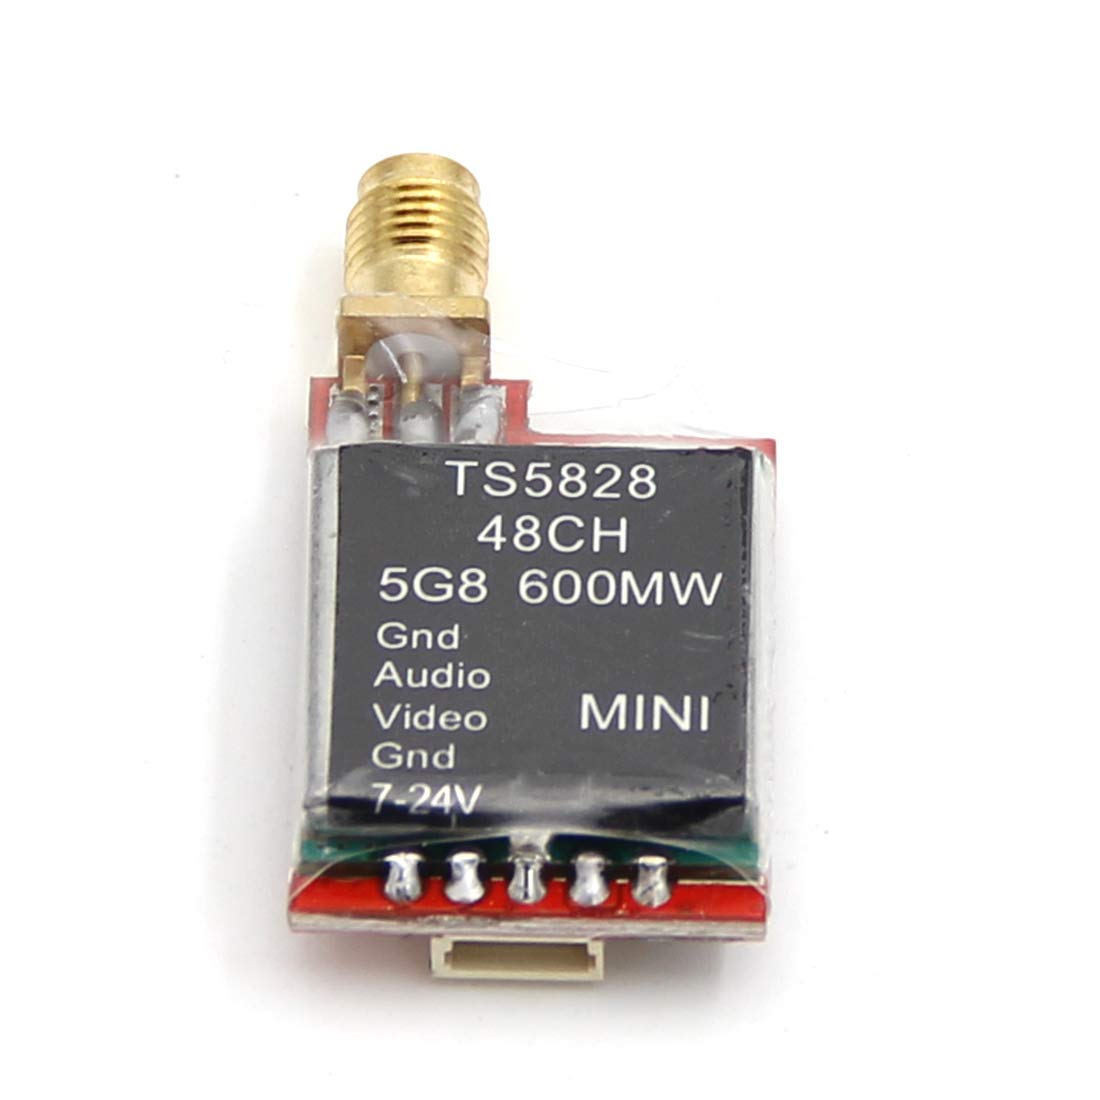 TS5828 Mini 48CH 600MW Transmitter